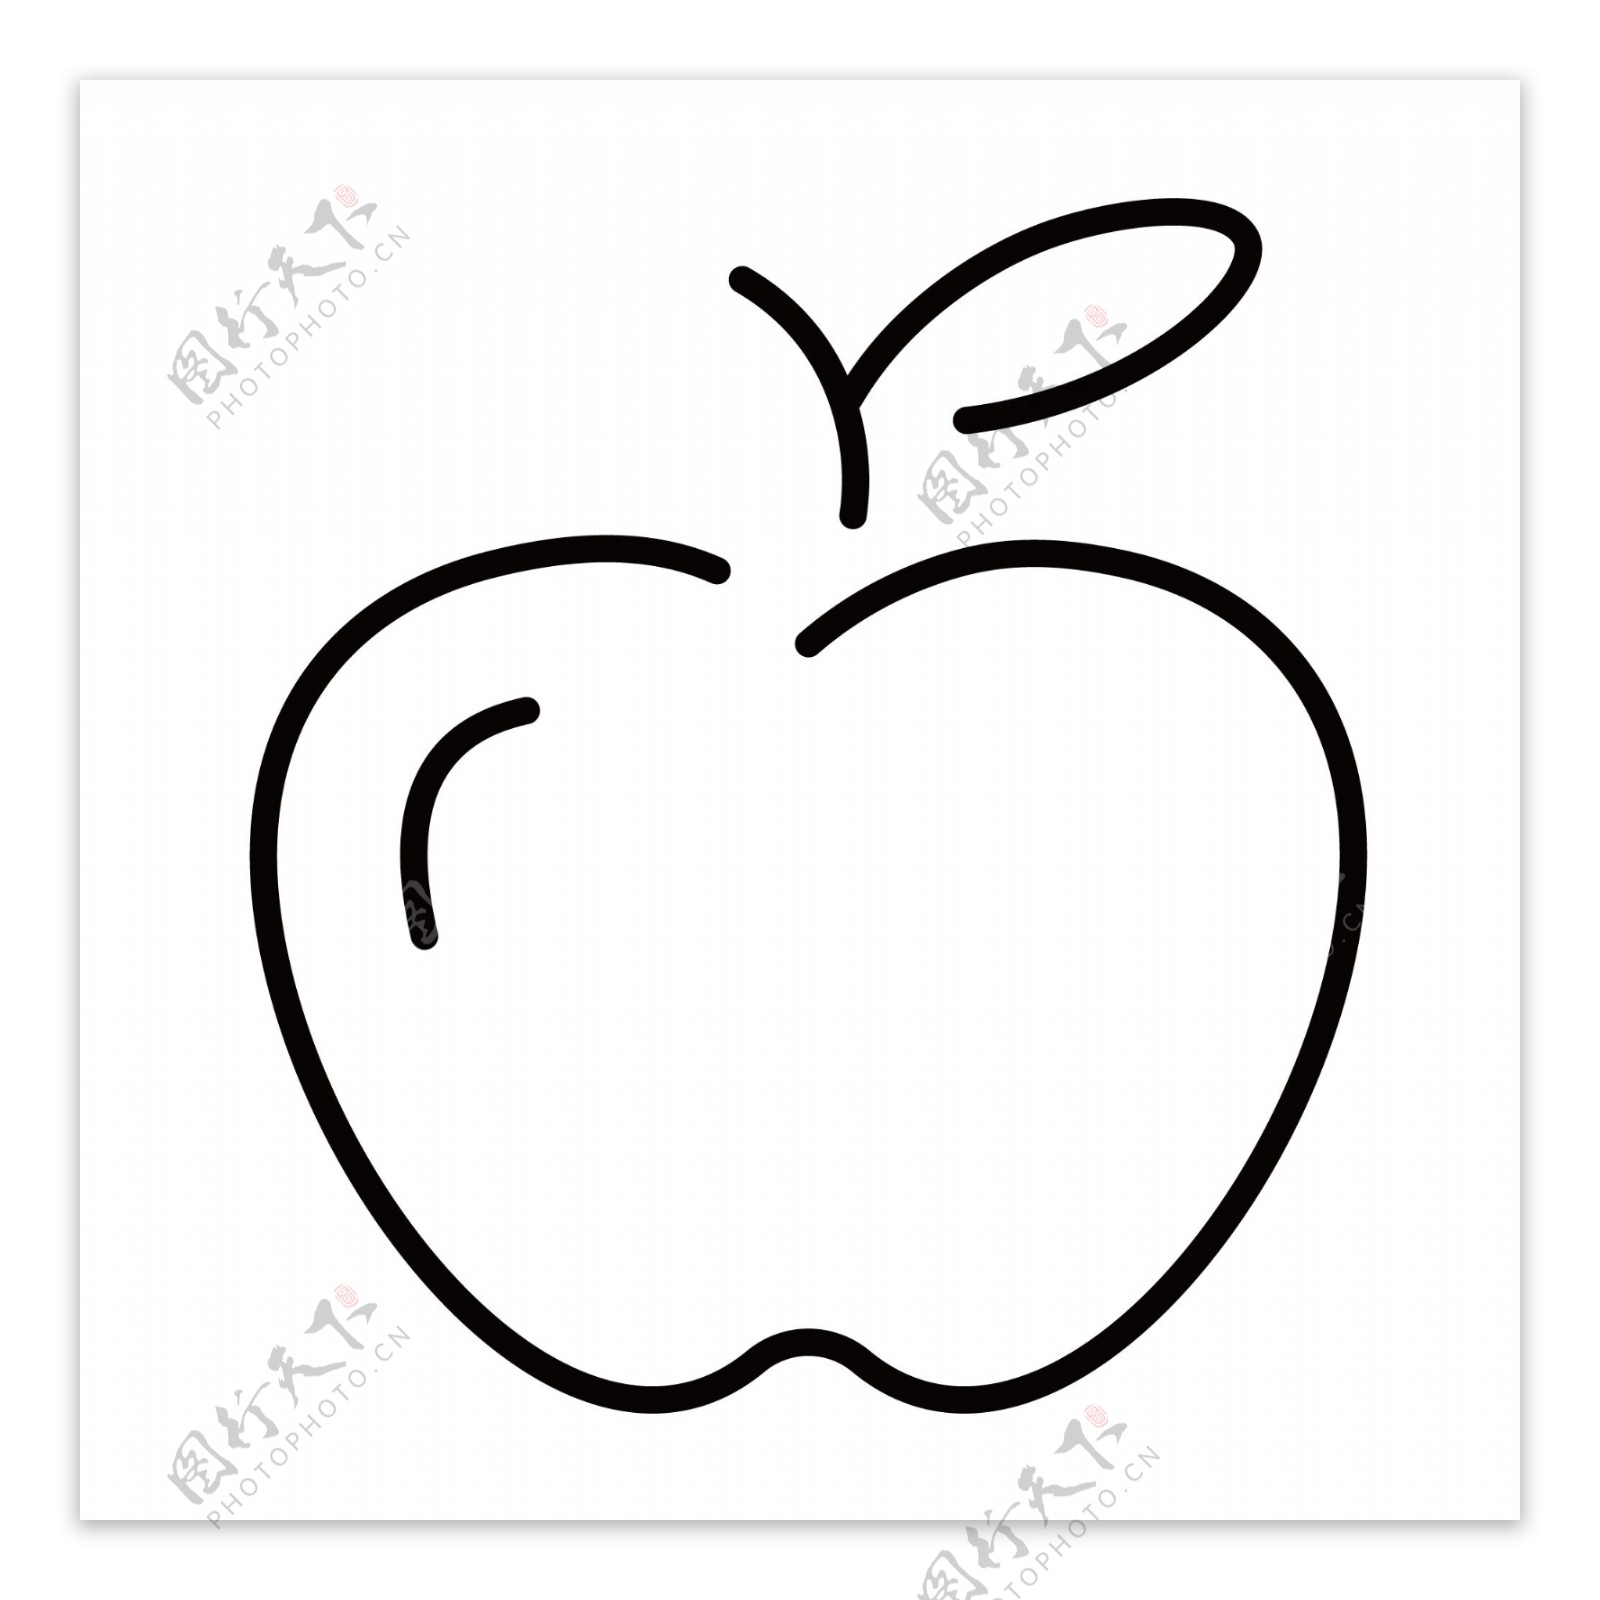 一个卡通的苹果